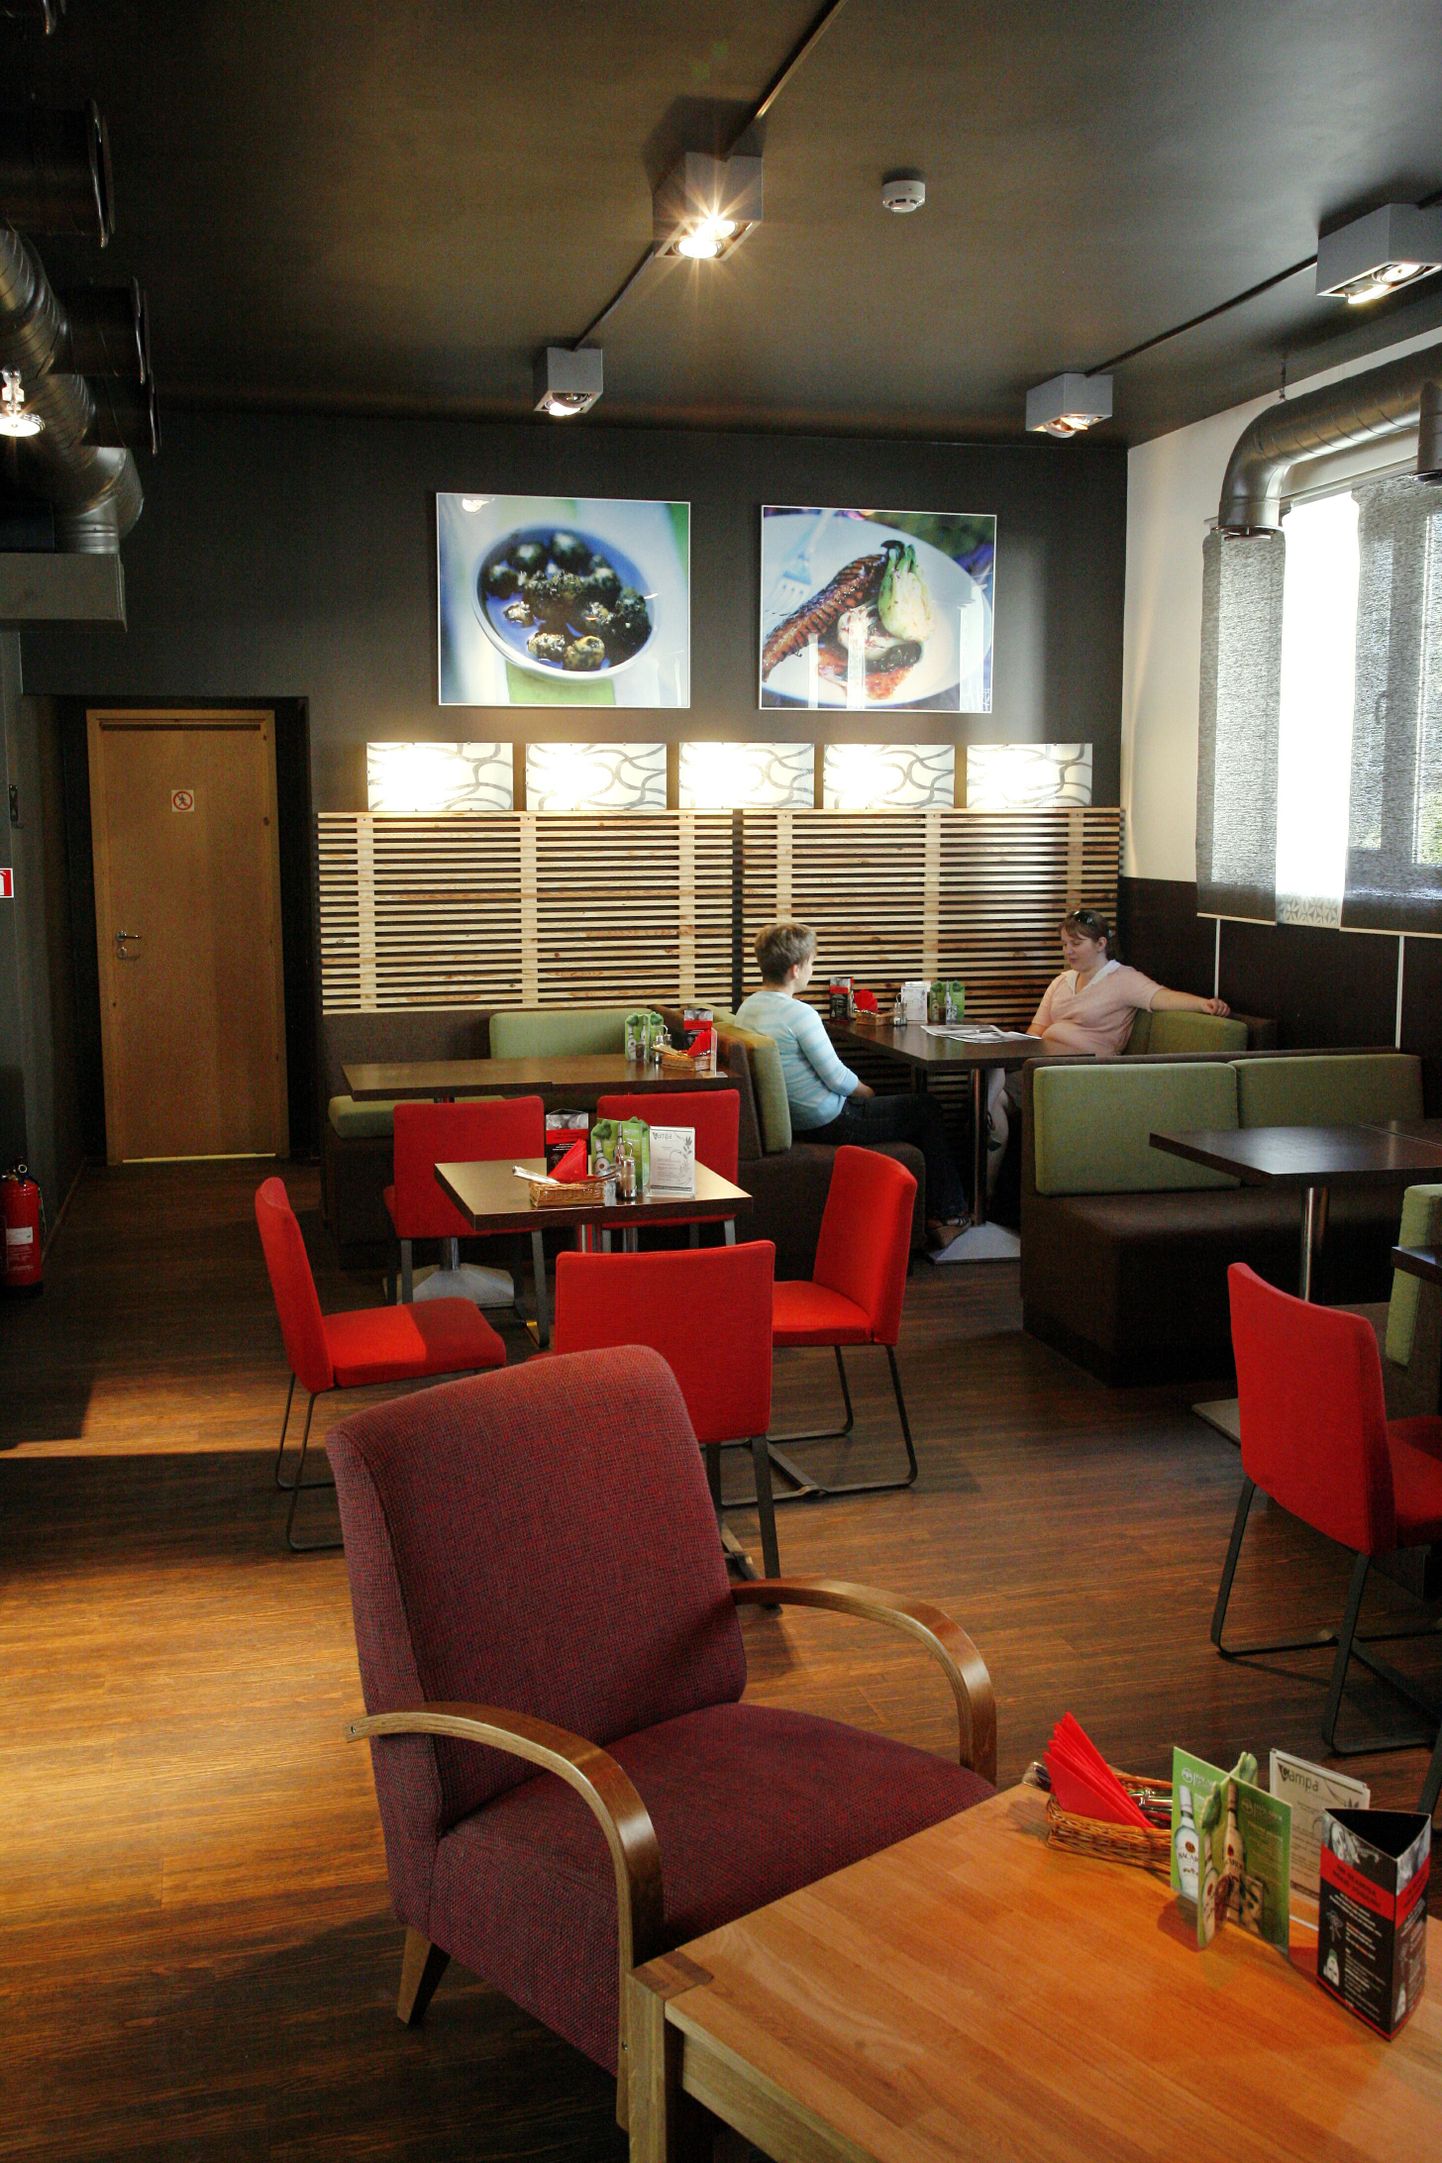 Et Cafe Campas levib tasuta Wifi-internet, on kohviku õdusas interjööris mugav ka päeval töötada.